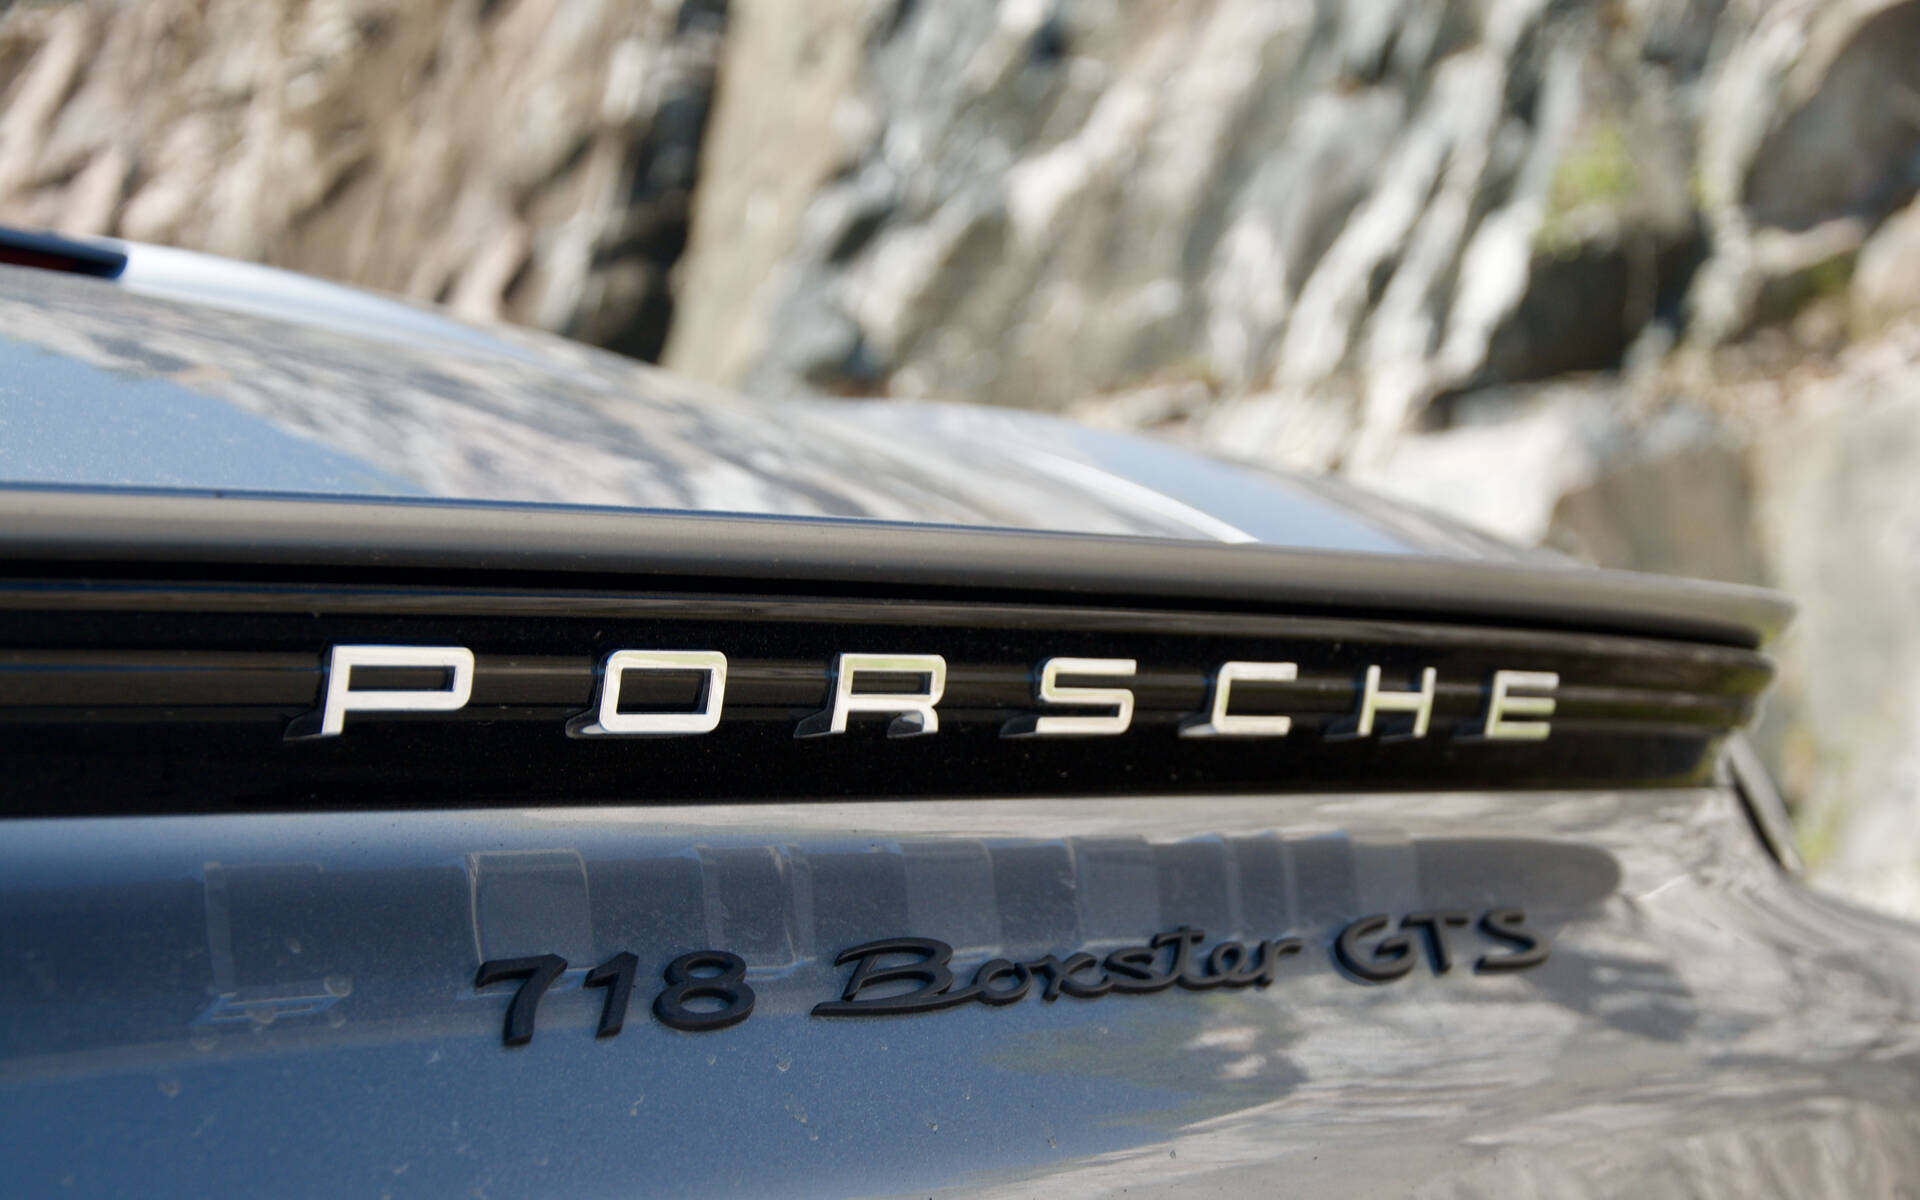 Confirmé : des Porsche 718 électriques s’en viennent d’ici 2025 516697-confirme-des-porche-718-electriques-s-en-viennent-d-ici-2025